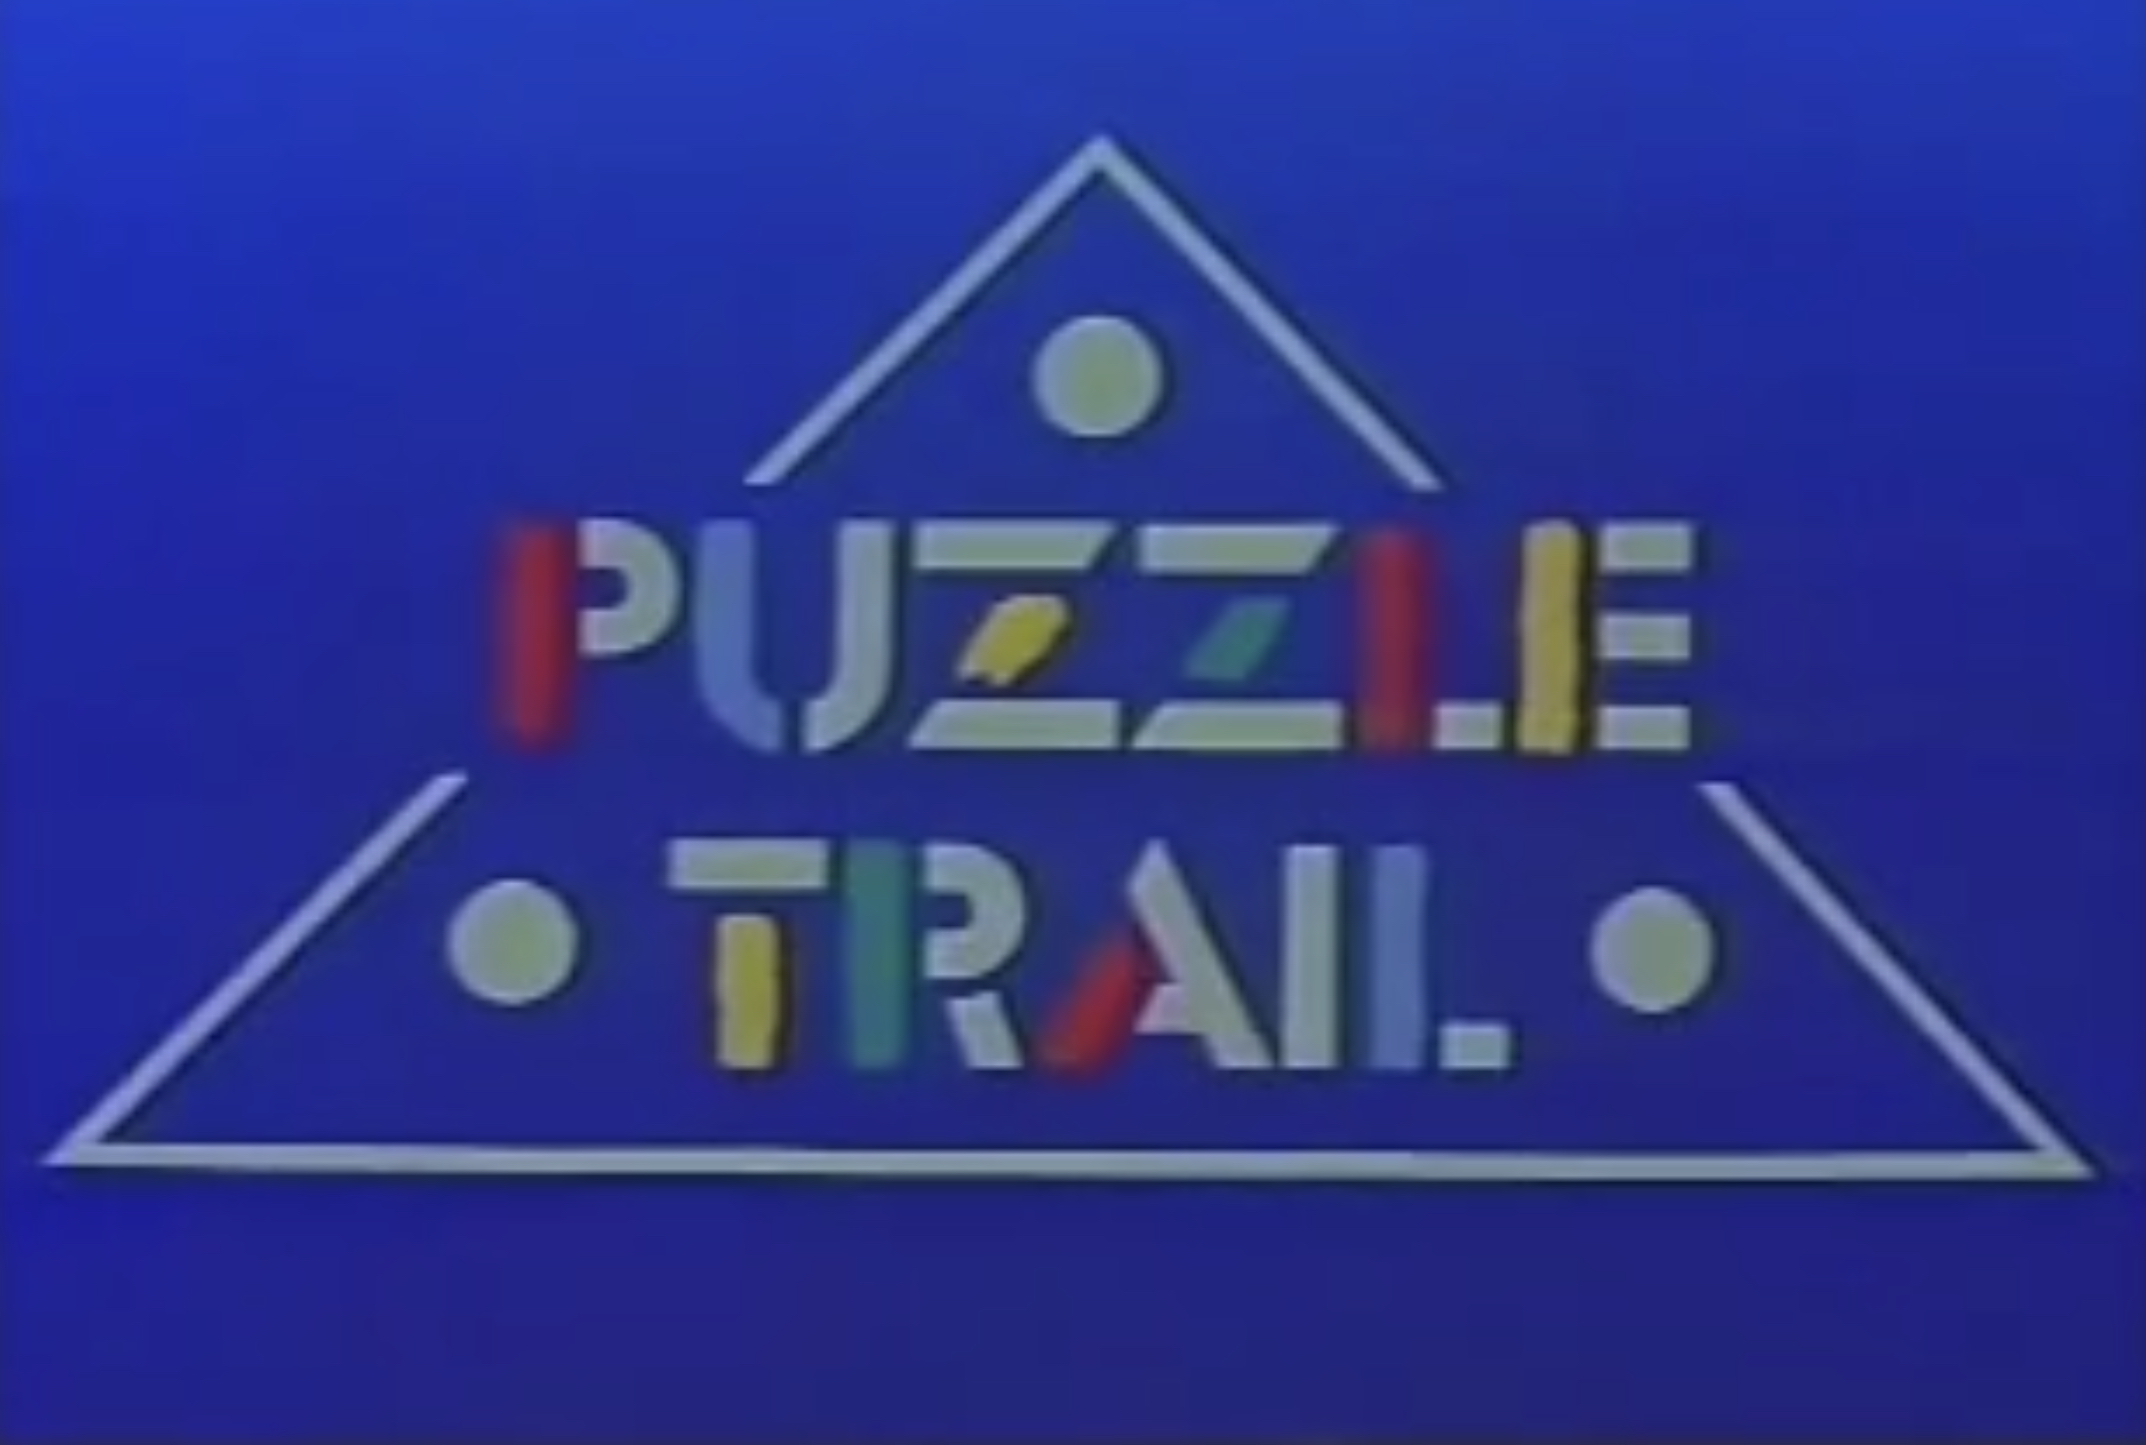 Puzzle trail title.jpeg